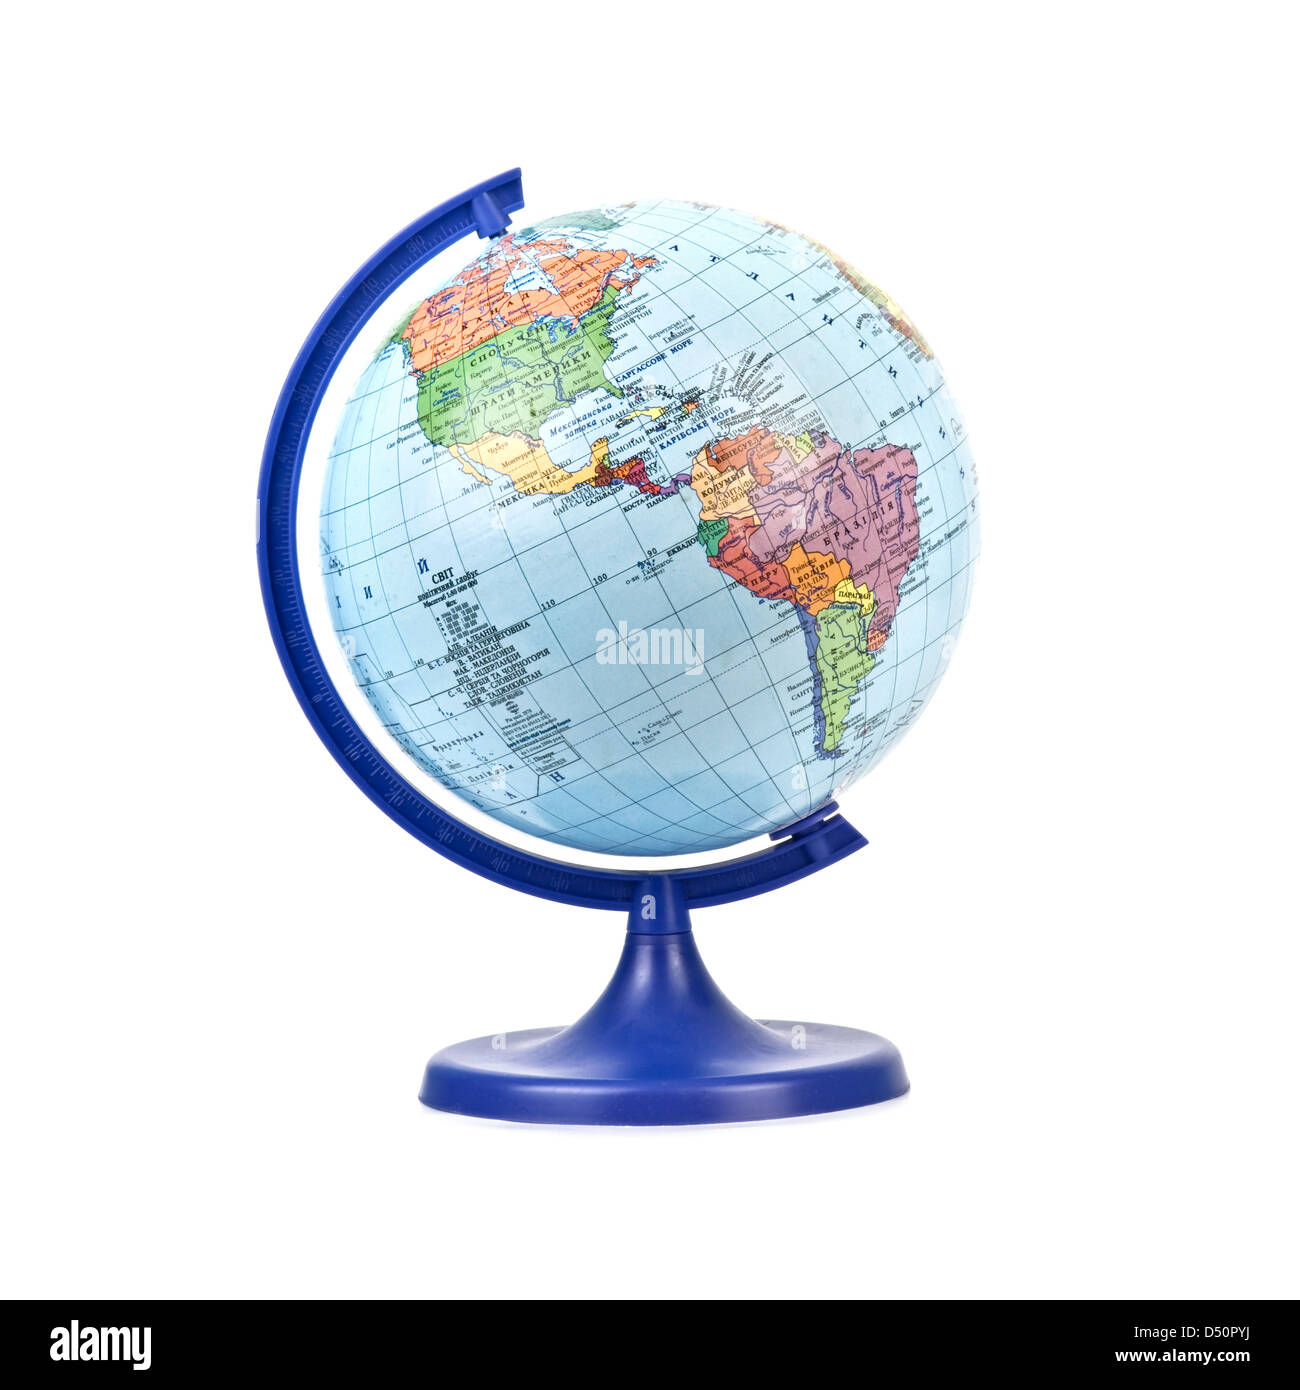 globe isolated on white background Stock Photo